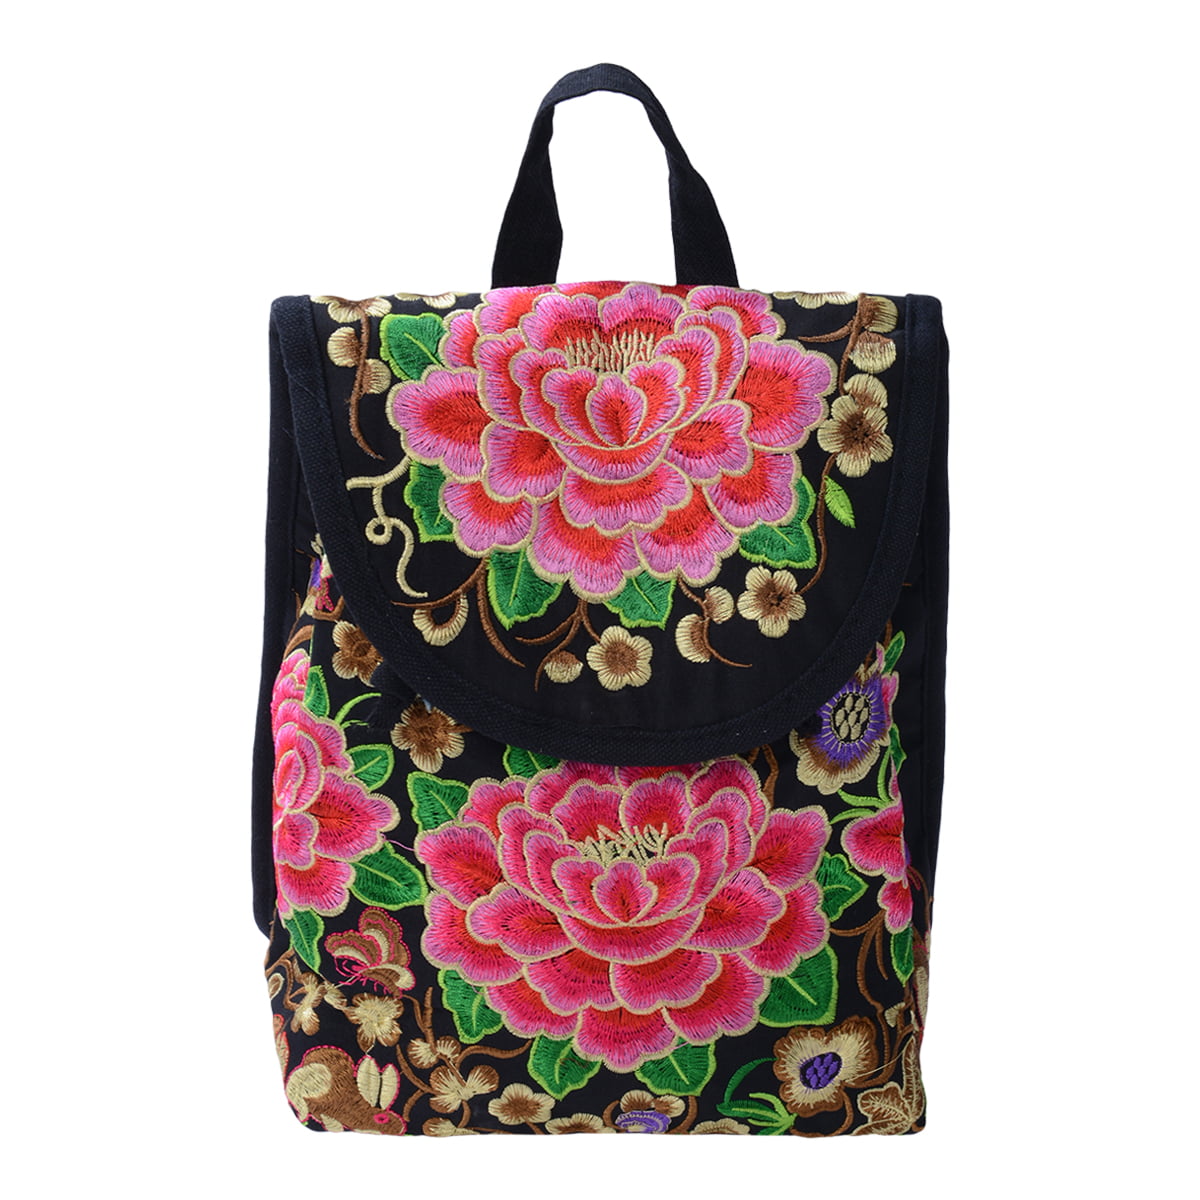 Embroidered Women Backpack Ethnic Travel Handbag Shoulder Bag